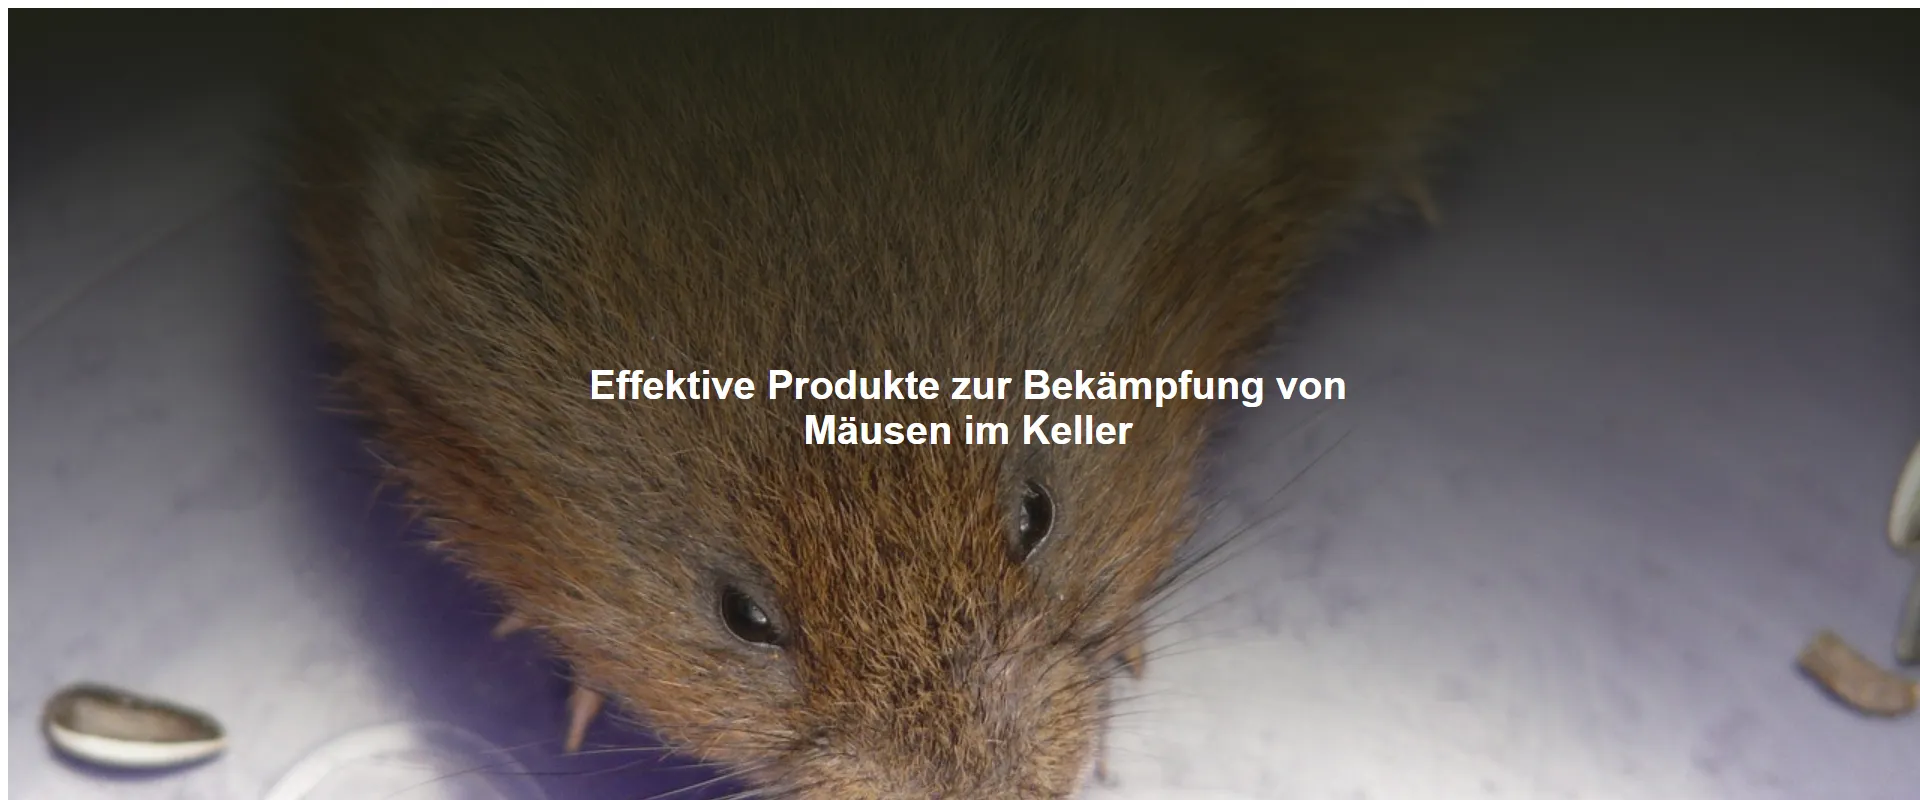 Effektive Produkte zur Bekämpfung von Mäusen im Keller